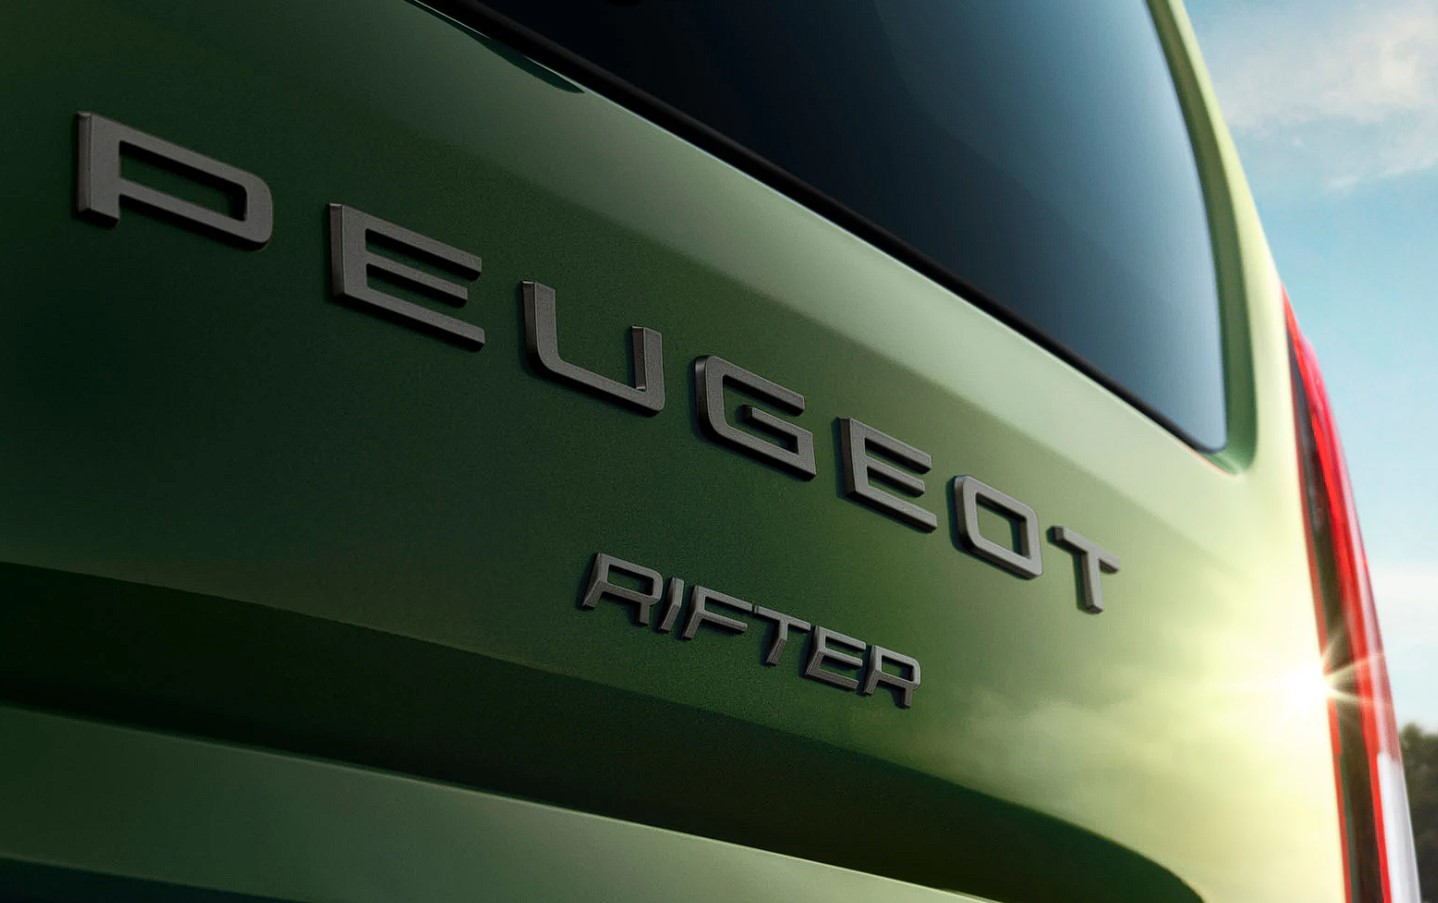 Makyajlı Peugeot Rifter Türkiye'de: İşte fiyatı ve özellikleri